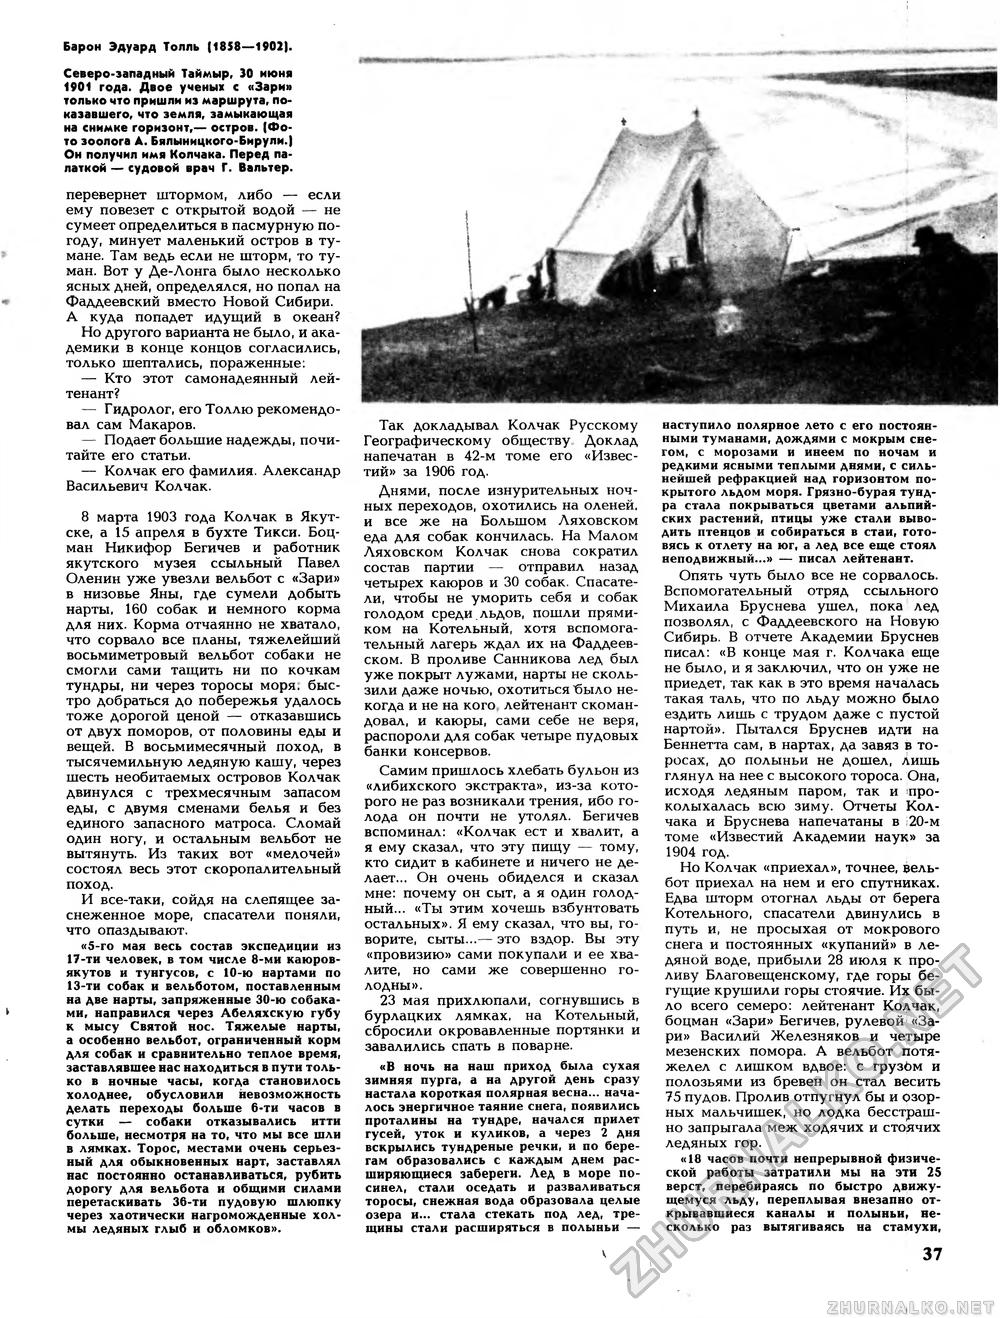 Вокруг света 1991-01, страница 39